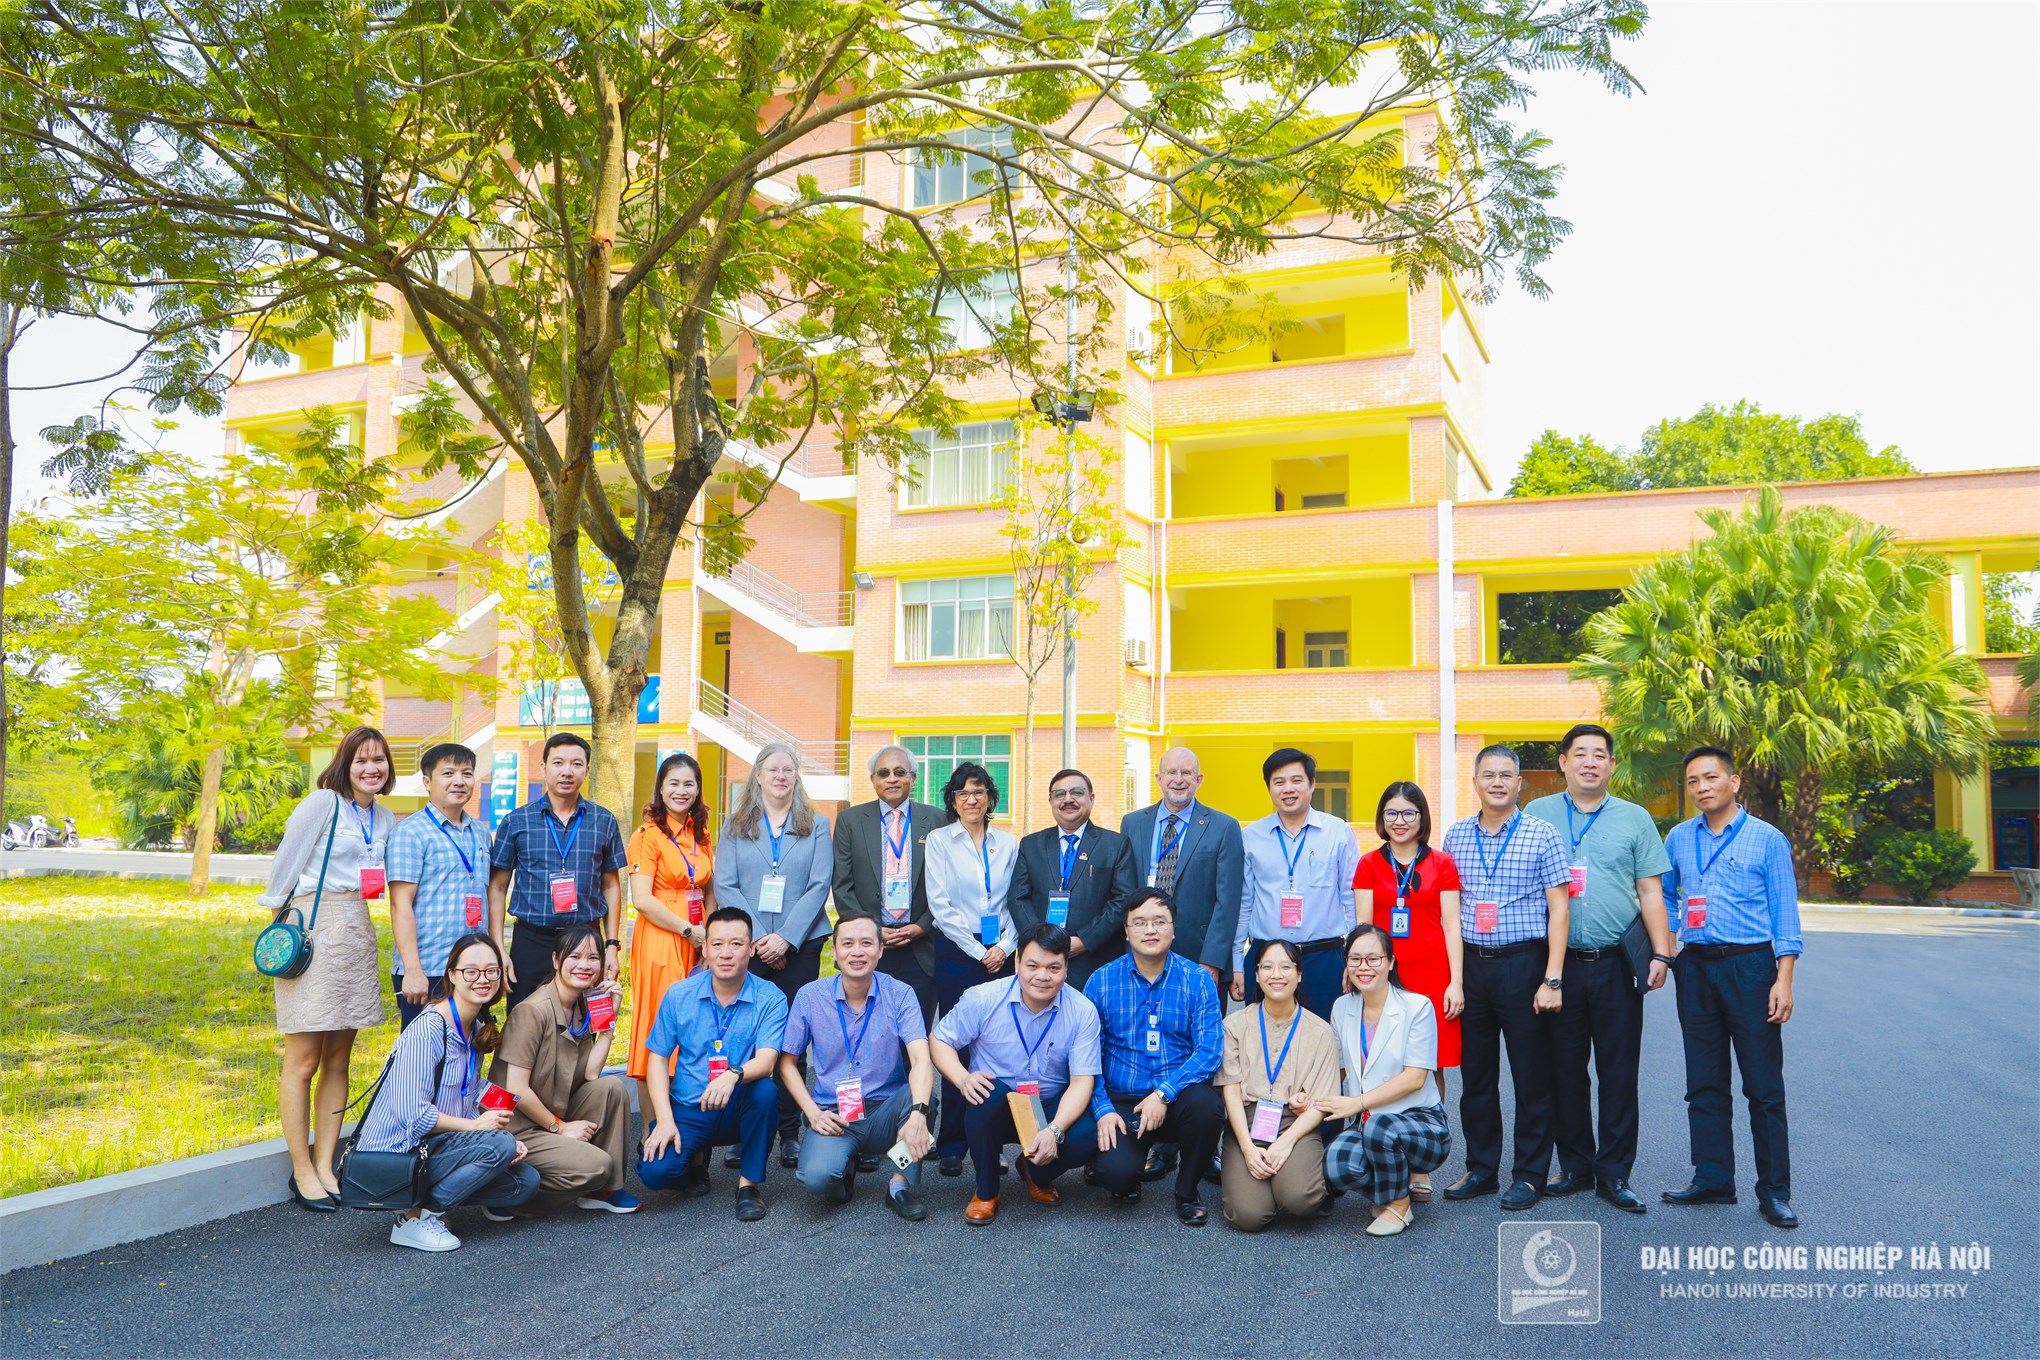 Bế mạc phiên đánh giá chính thức chương trình đào tạo theo chuẩn kiểm định ABET tại trường Đại học Công nghiệp Hà Nội mở ra cơ hội cho sinh viên tốt nghiệp tham gia vào thị trường nhân lực toàn cầu.